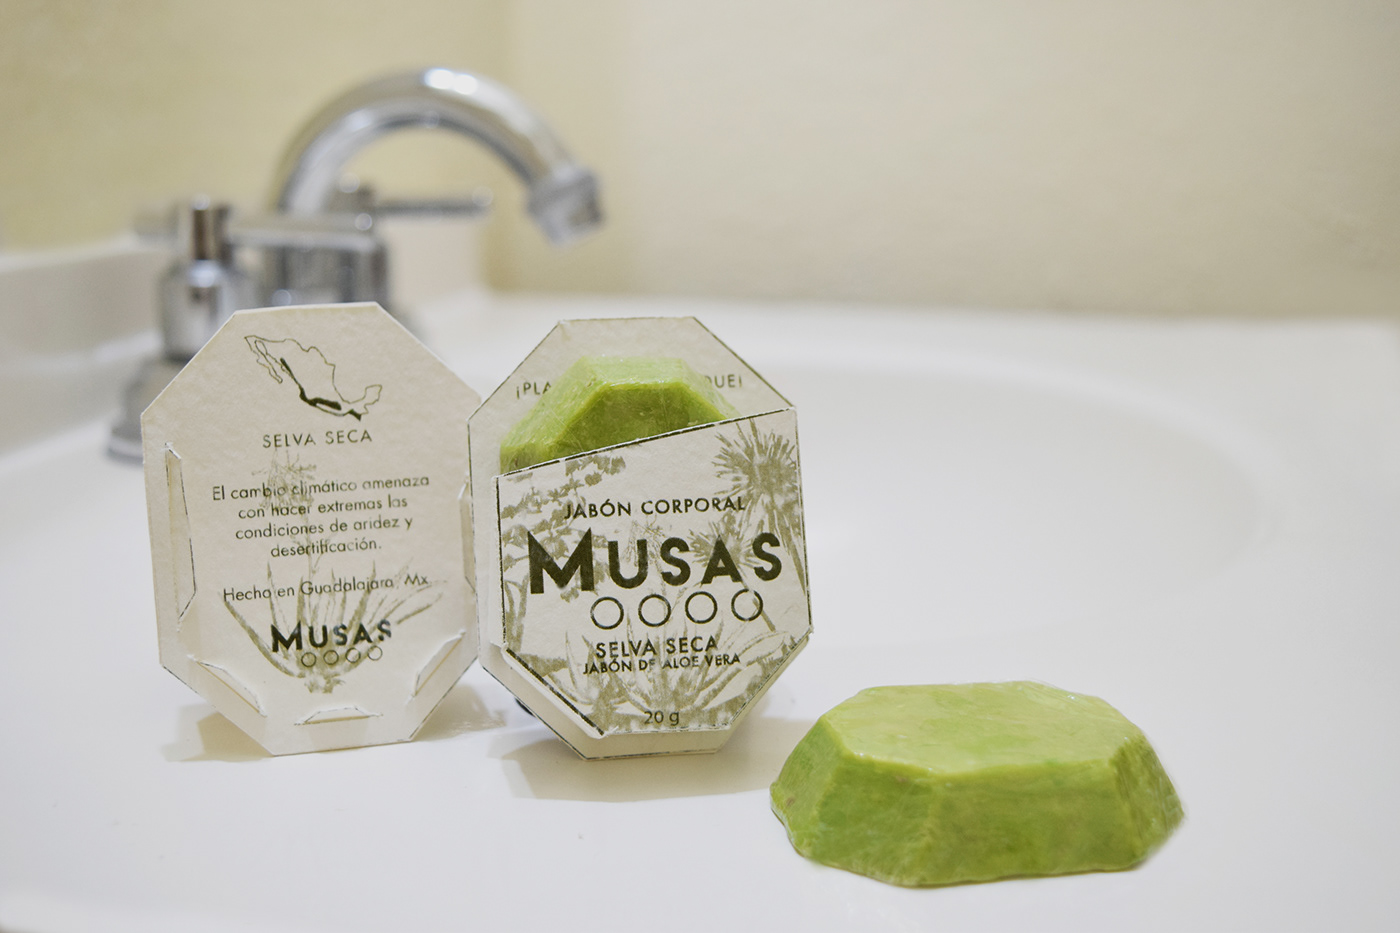 packagin sustentable soap mexico jabones bathroom clean